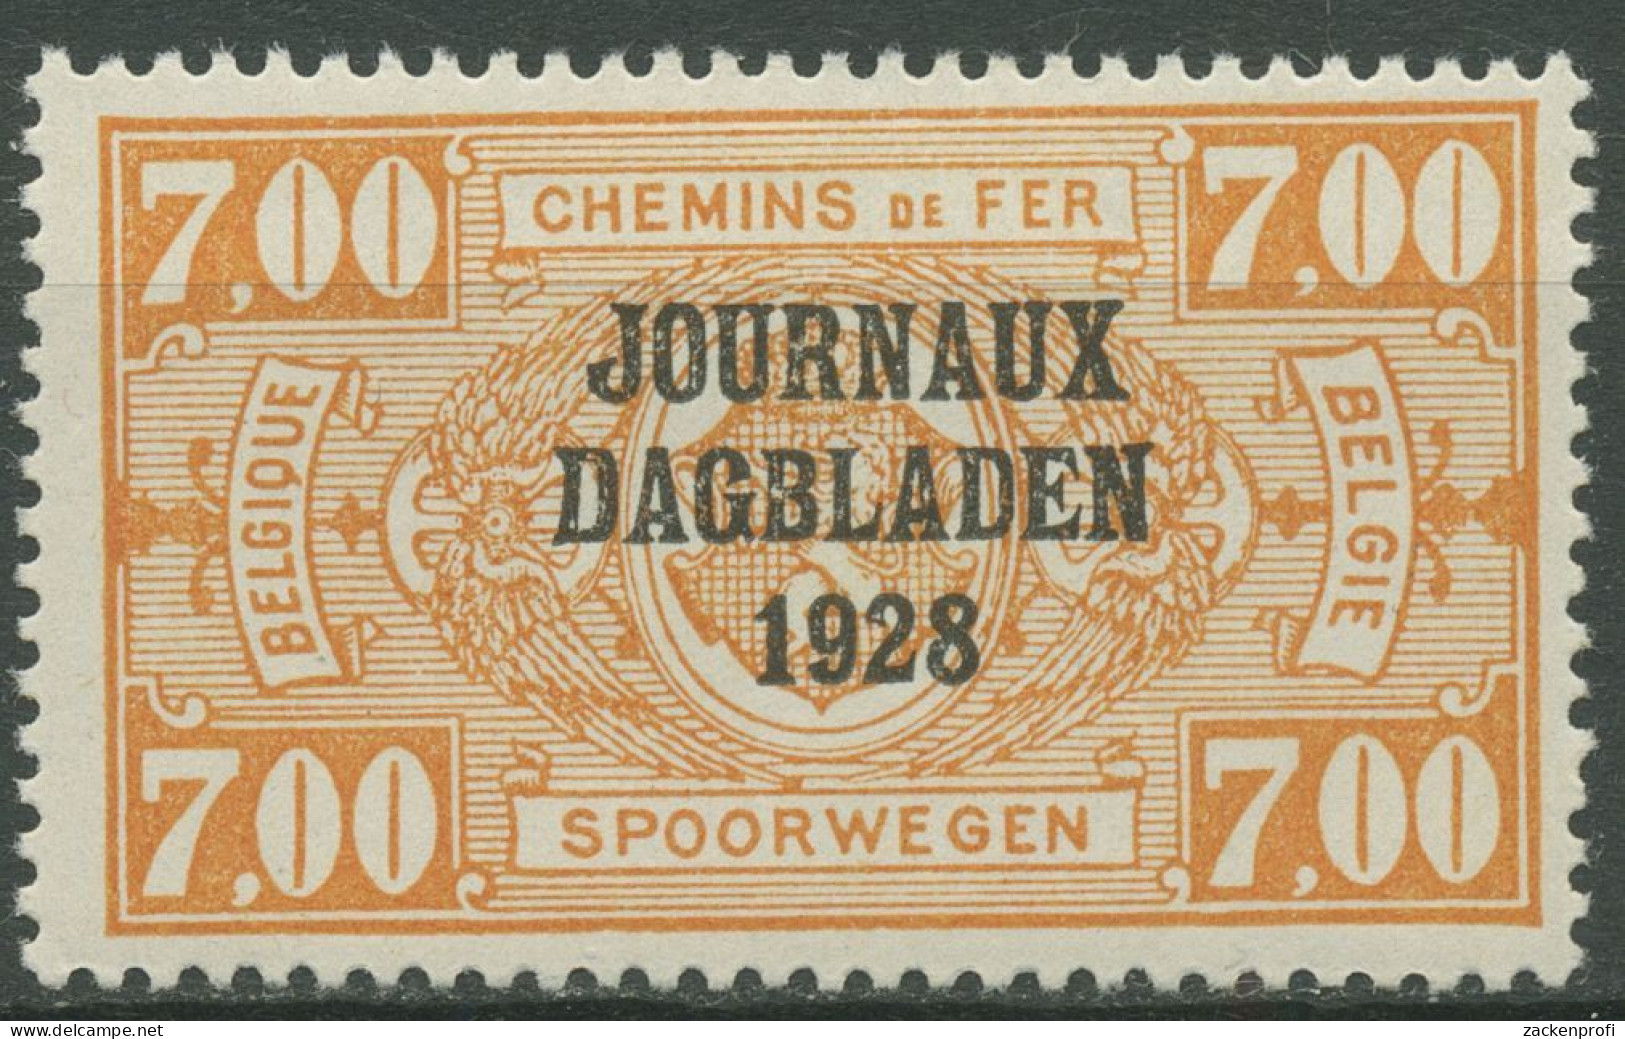 Belgien 1928 Zeitungspaketmarke Mit Aufdruck ZP 15 Mit Falz - Newspaper [JO]